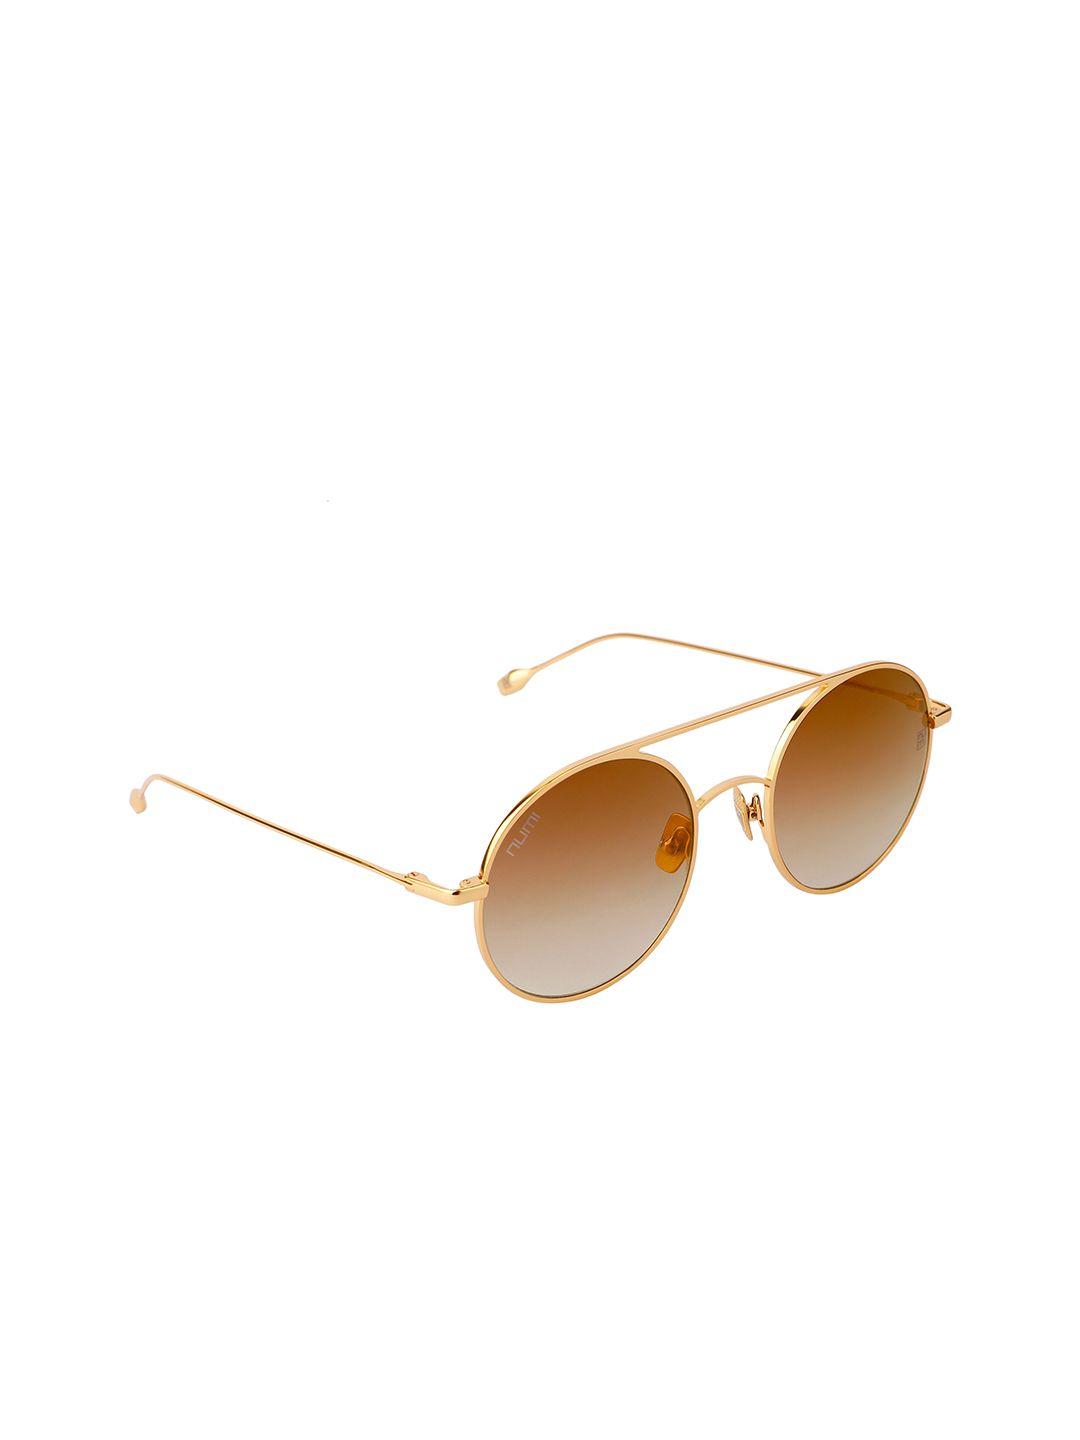 numi unisex brown & gold-toned full rim oval sunglasses utopia